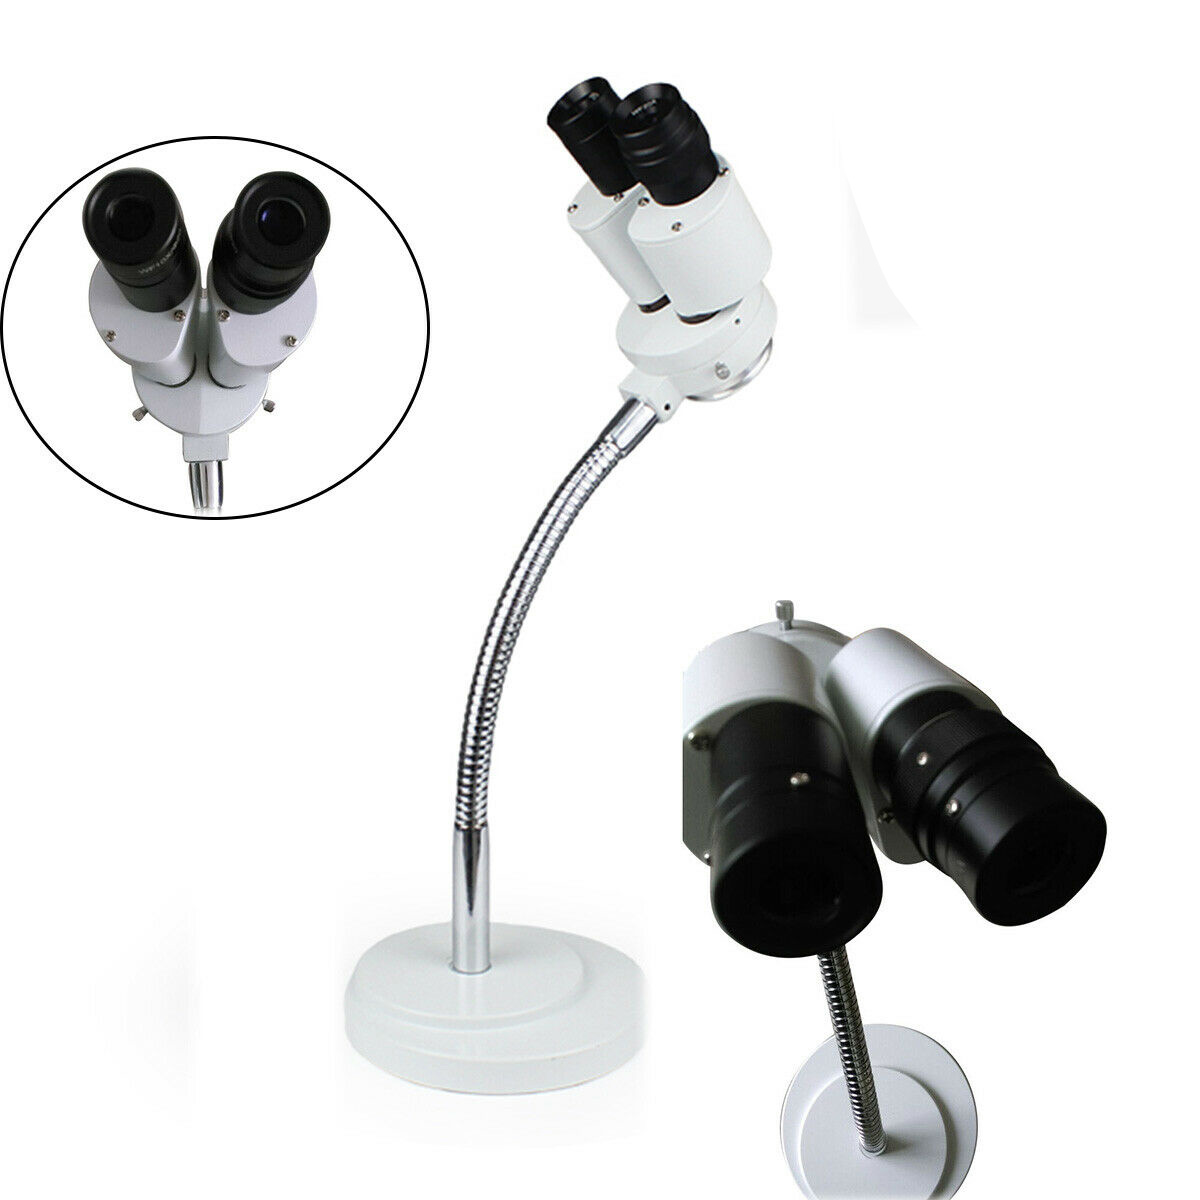 Micare 8X Microscopio Laboratorio Dental Girar 360 ° Ampliación Completa